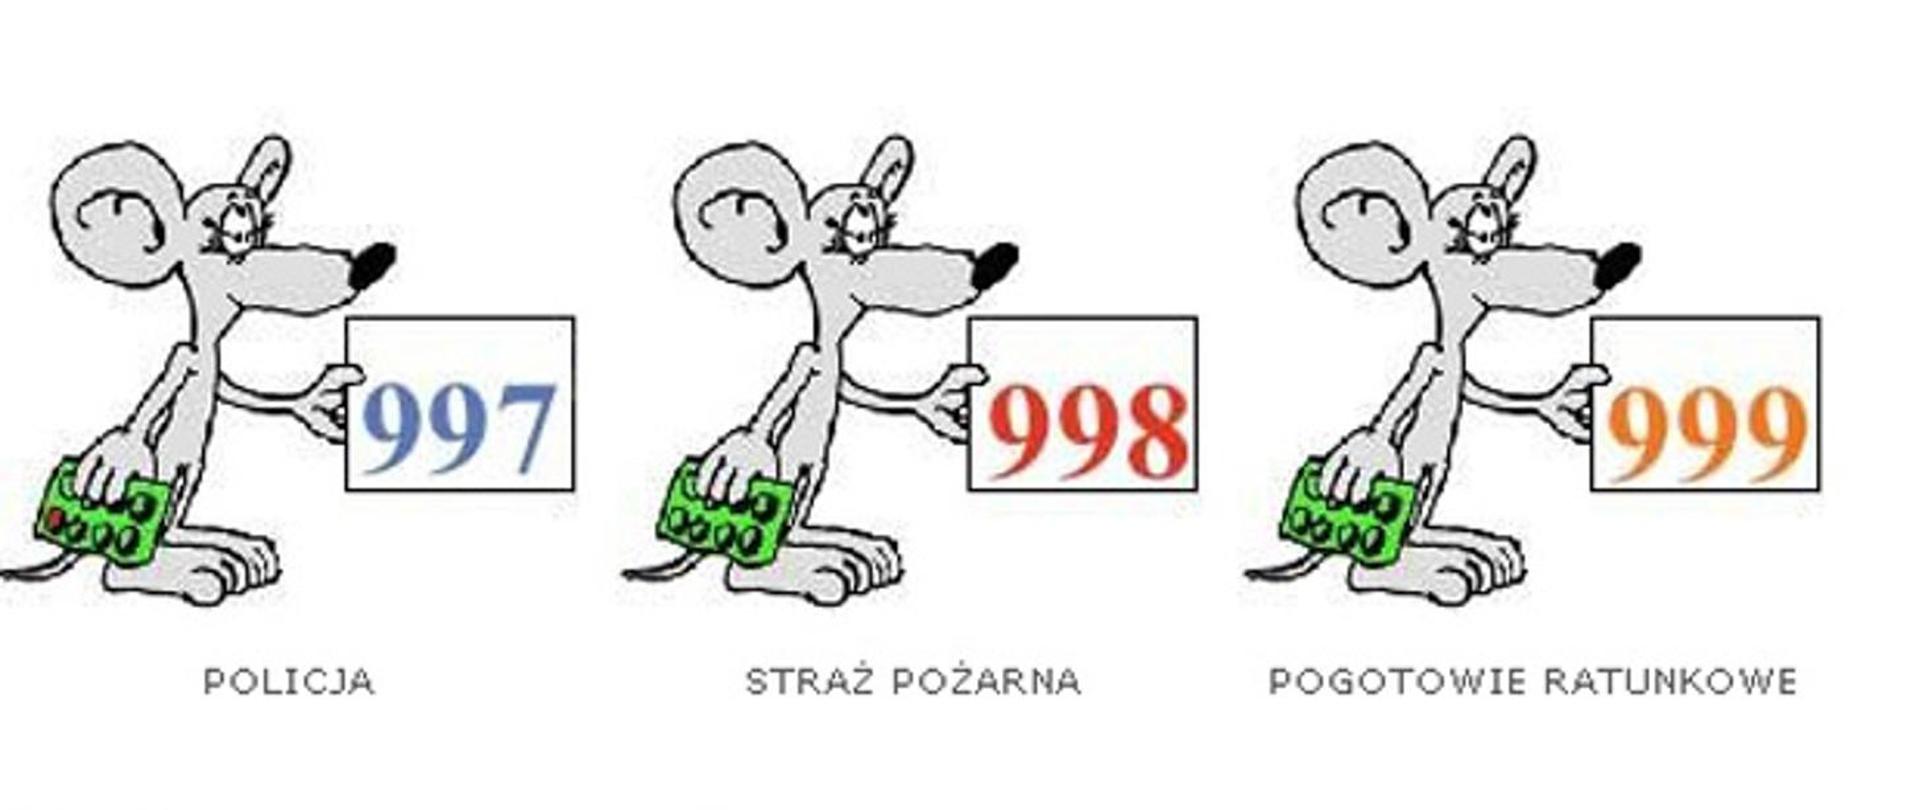 Zdjęcie przedstawia trzy myszki, z których każda trzyma w ręce tabliczkę z jednym z numerów alarmowych (997, 998, 999)